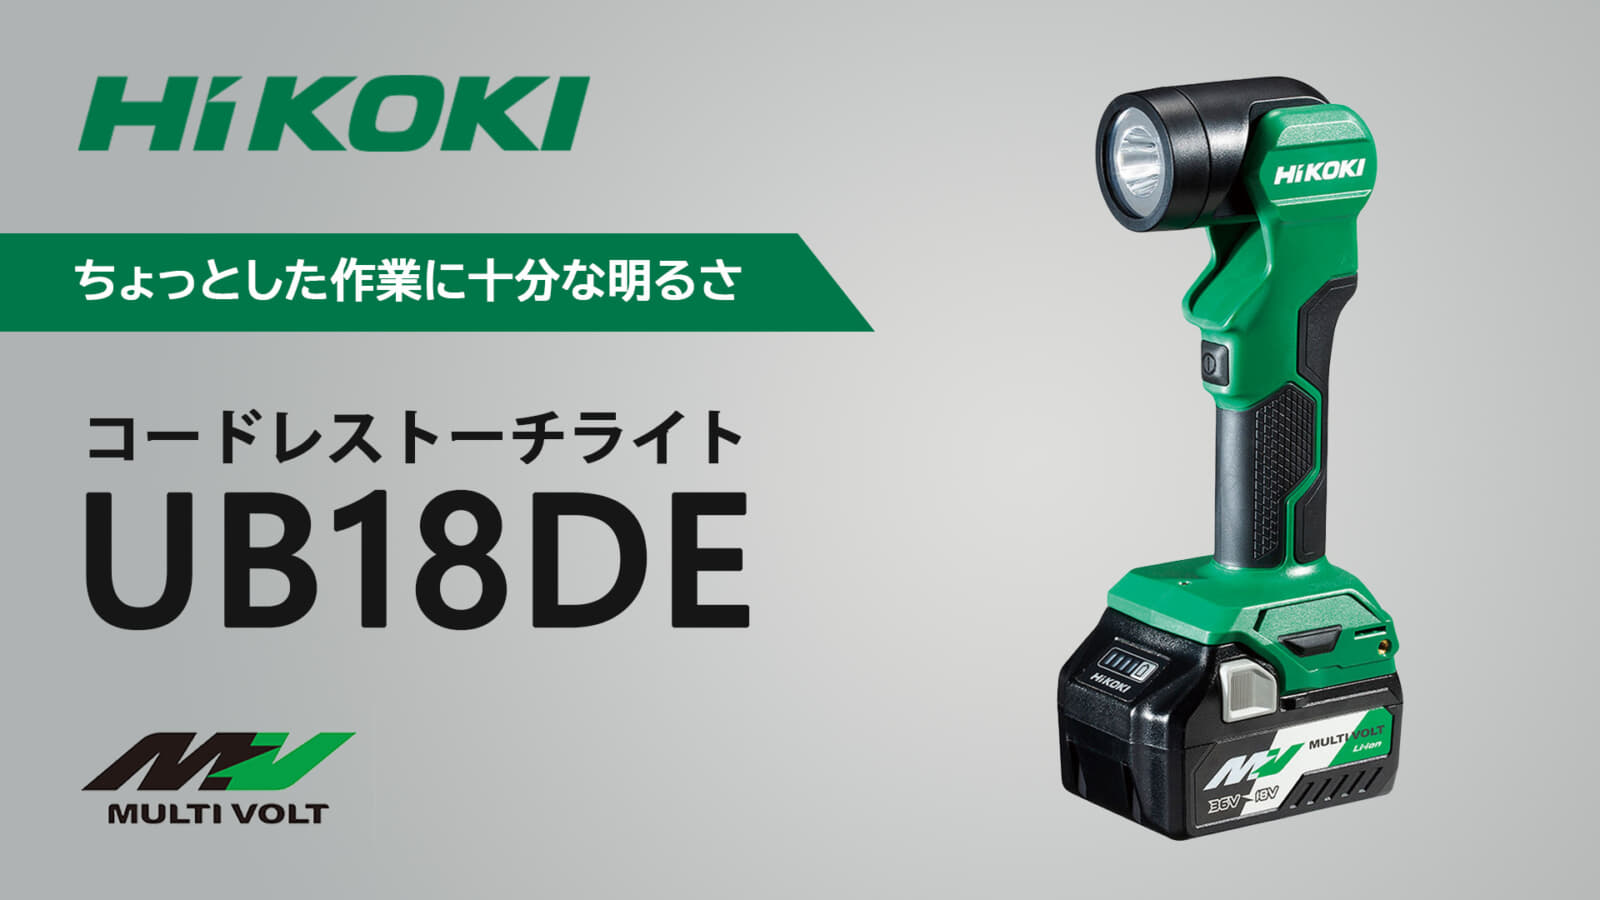 HiKOKI UB18DE コードレストーチライトを発売、ちょっとした作業で活躍する小型ライト